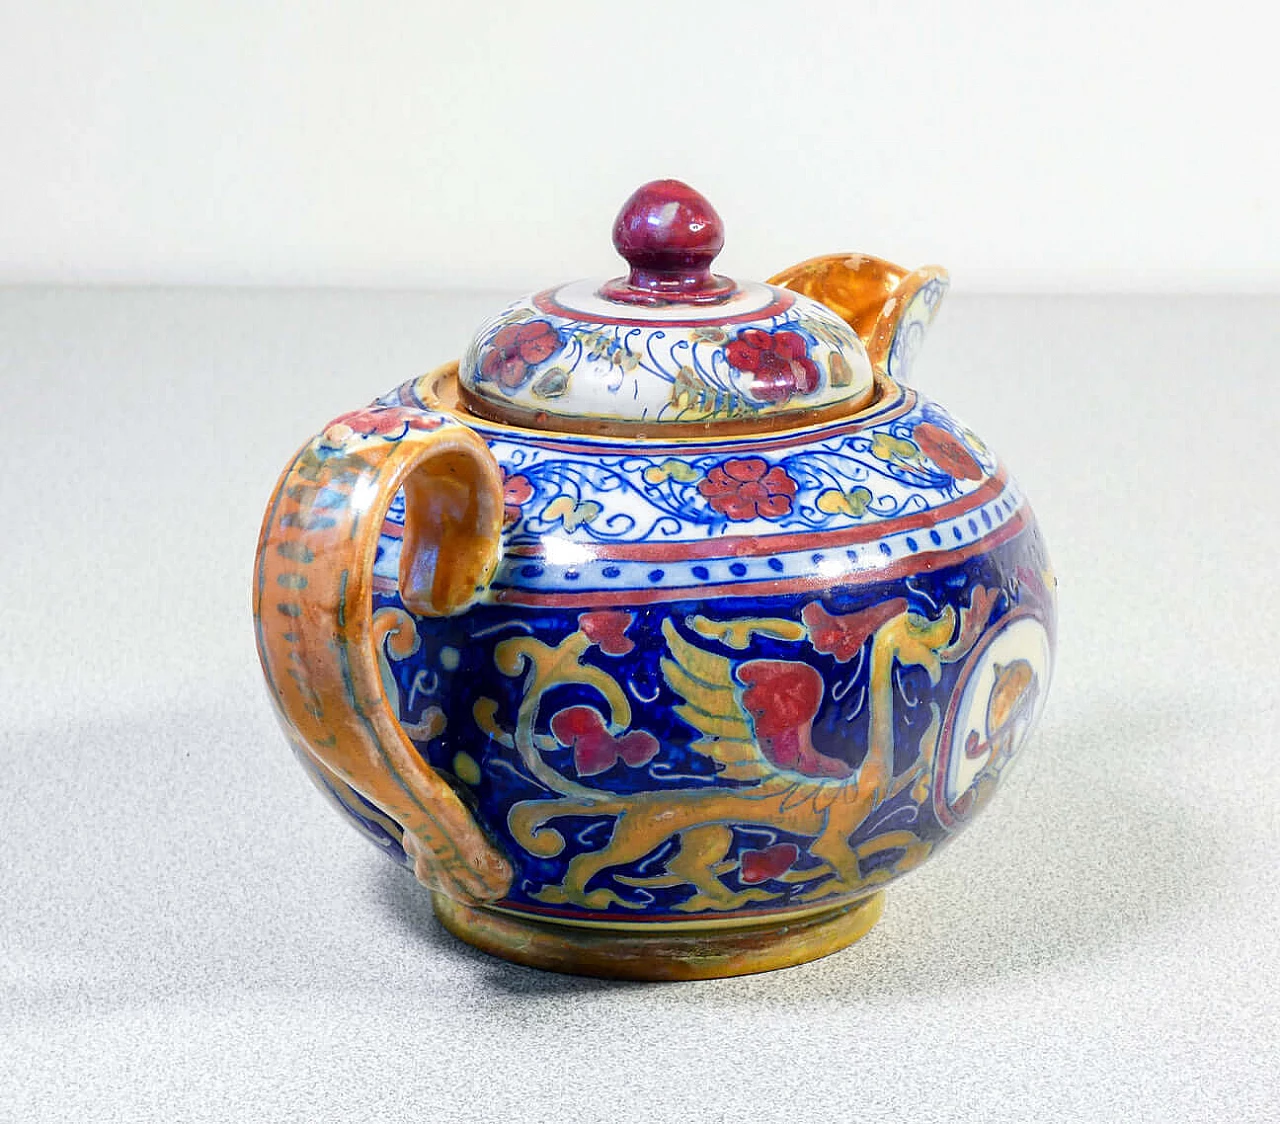 Ceramic teapot and sugar bowl by Mastro Giorgio Gualdo Tadino, early 20th century 6